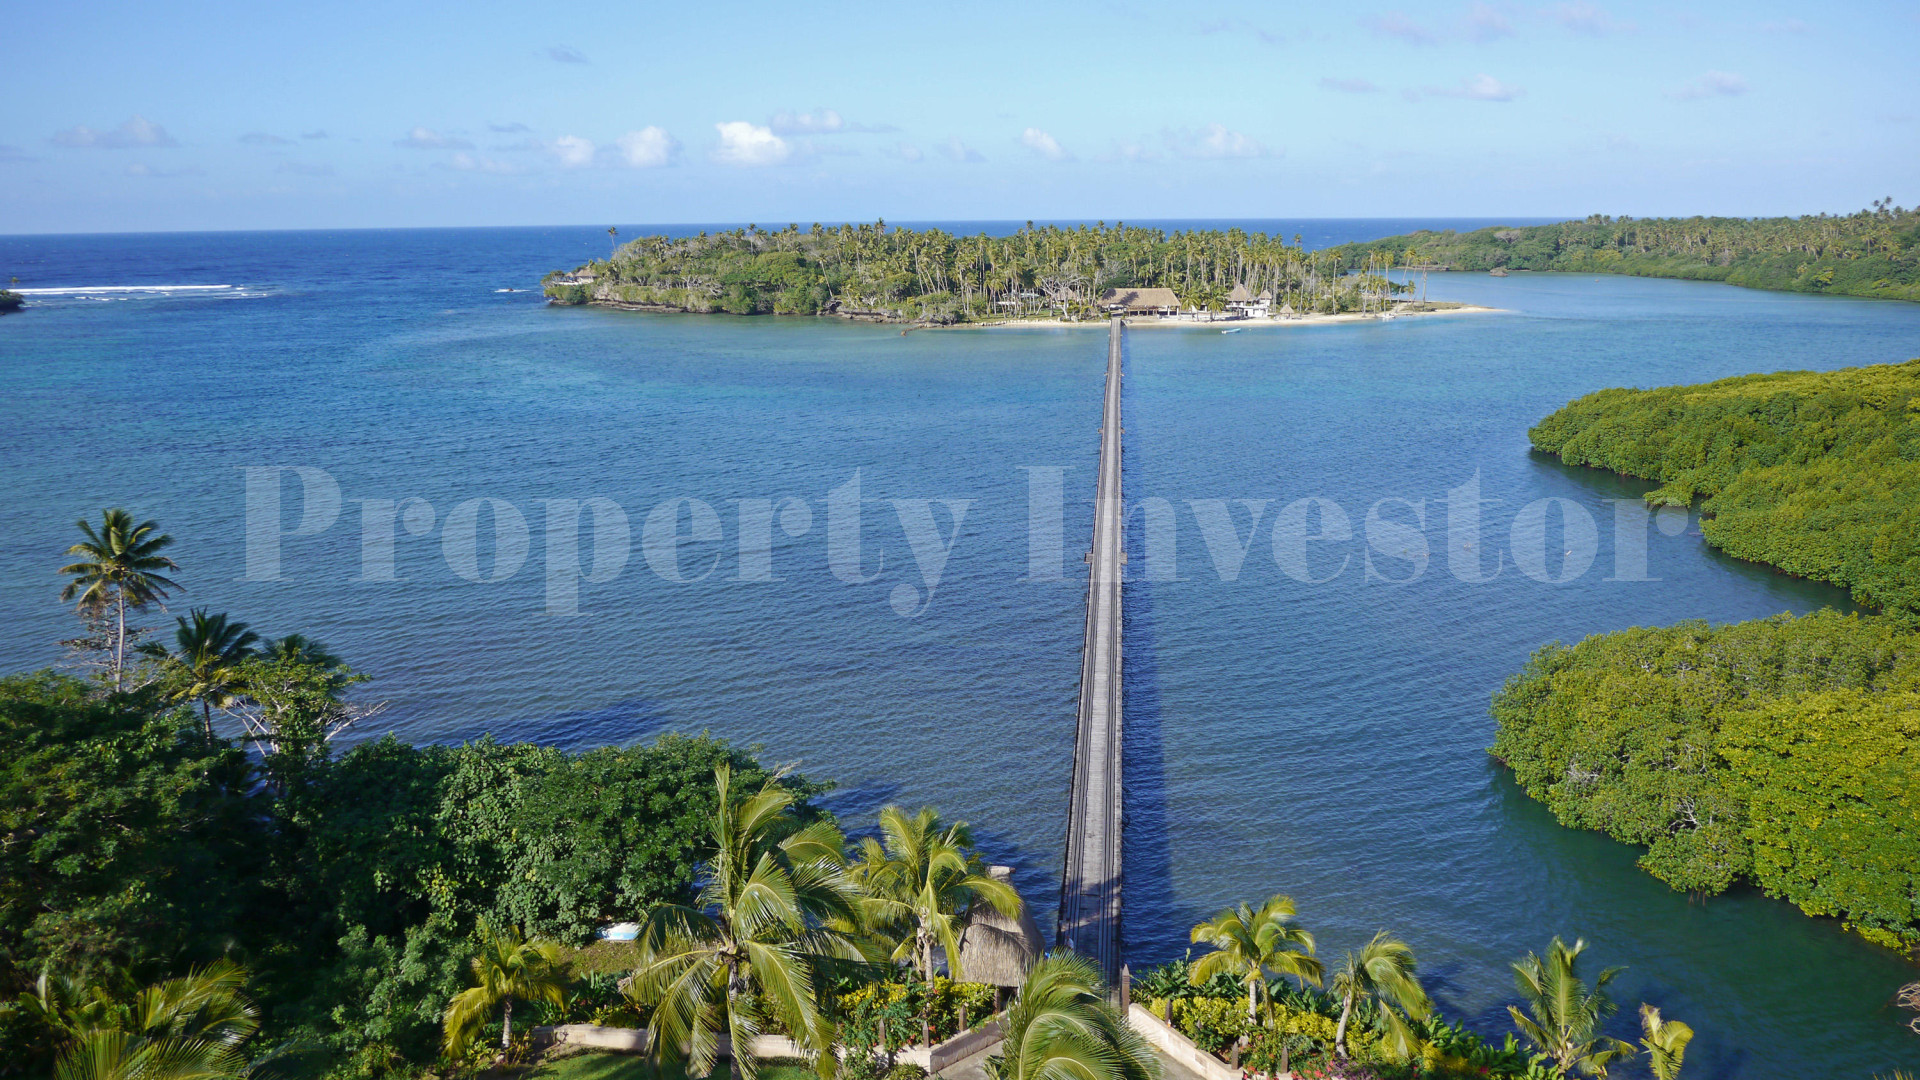 3,730 m² Private Island Freehold Lot for Sale in Vanua Levu, Fiji (Lot 12)